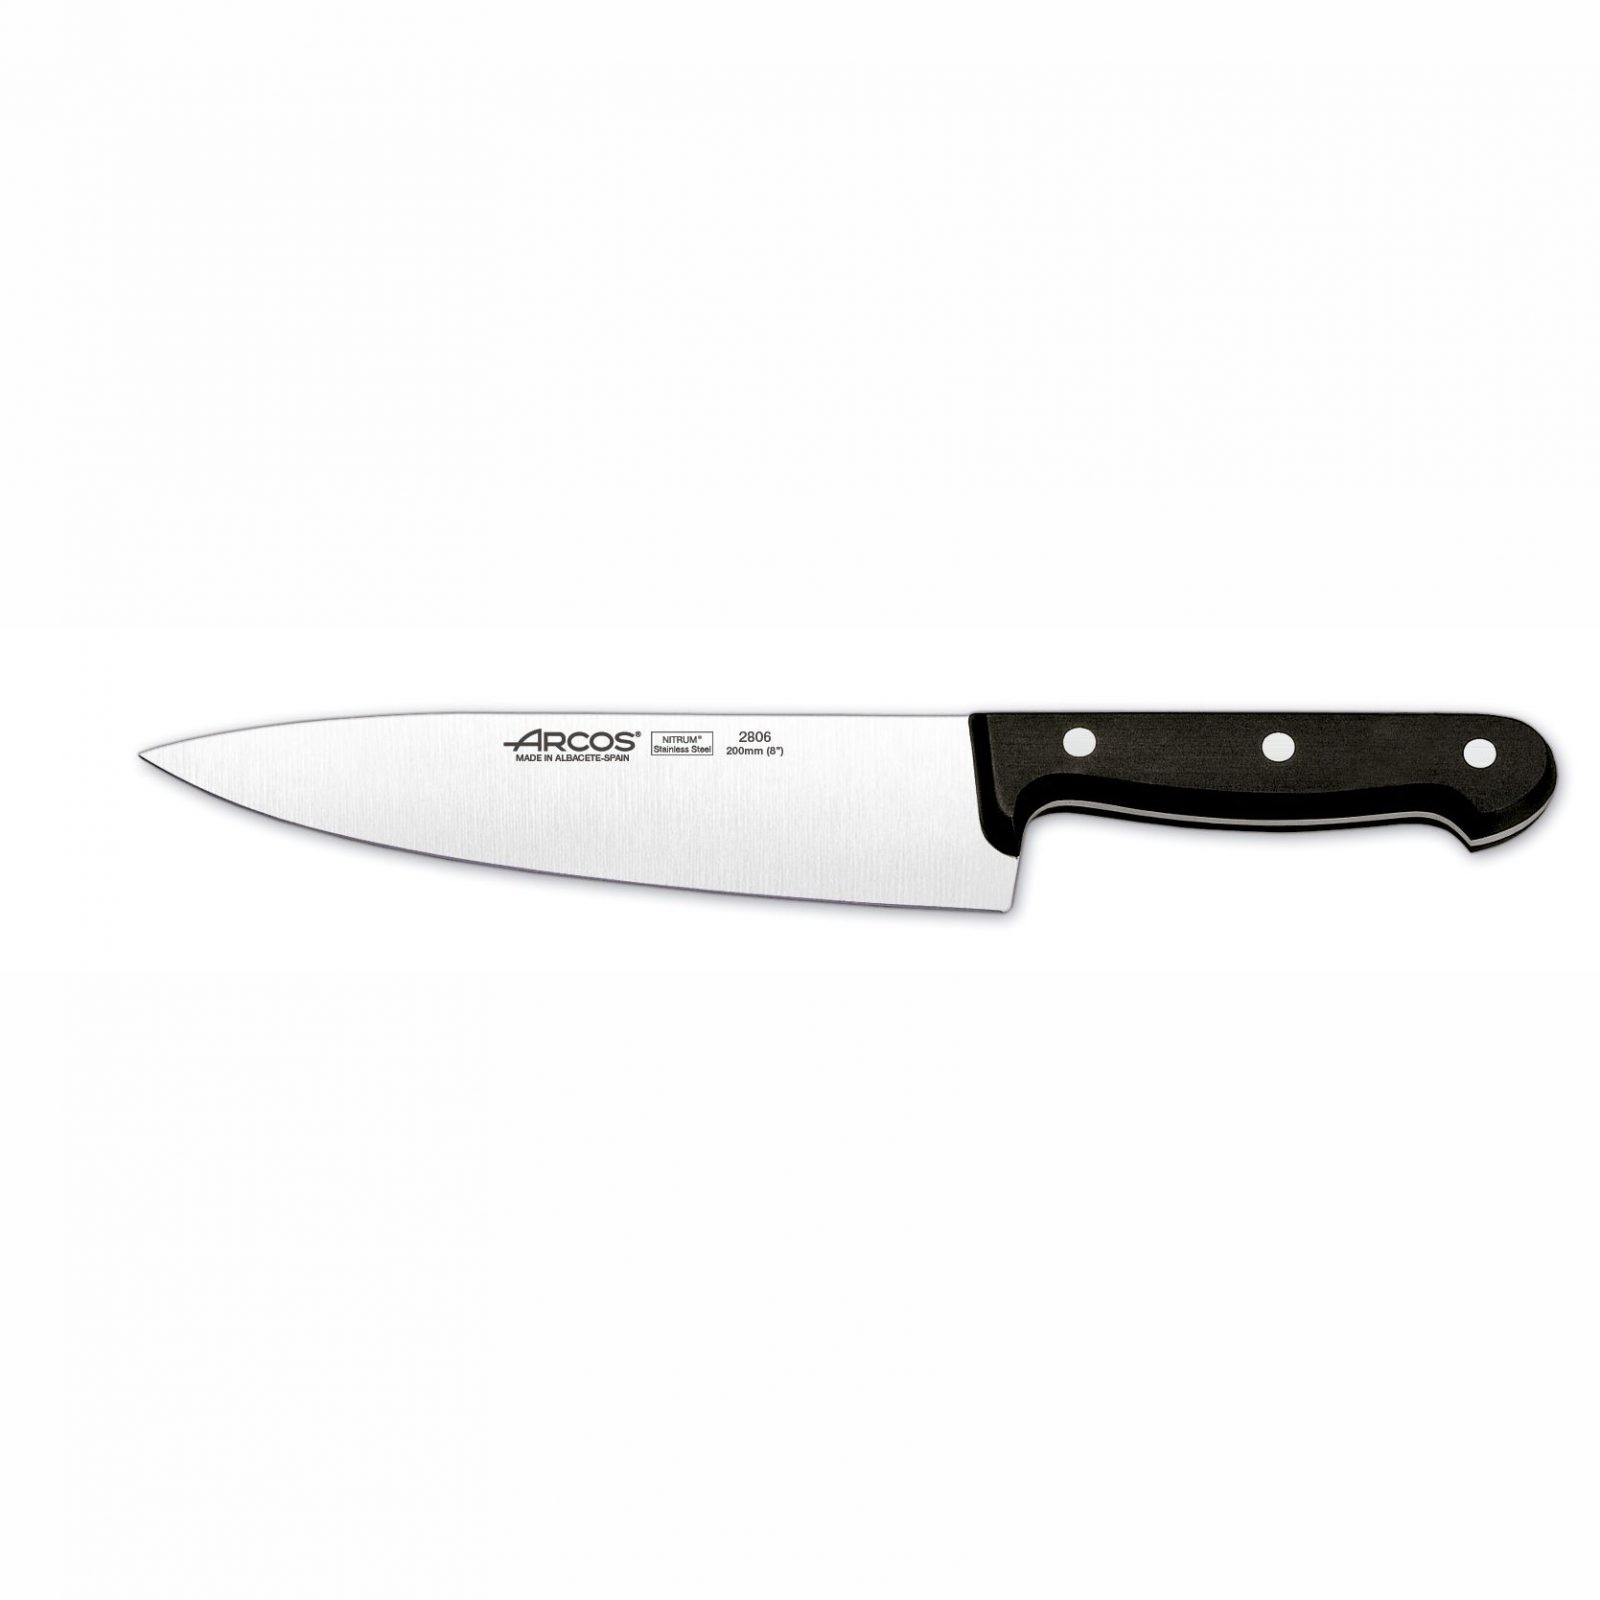 Cuchillo Cocinero / Cebollero 20cm Arcos Universal 280604 - Cuchillalia